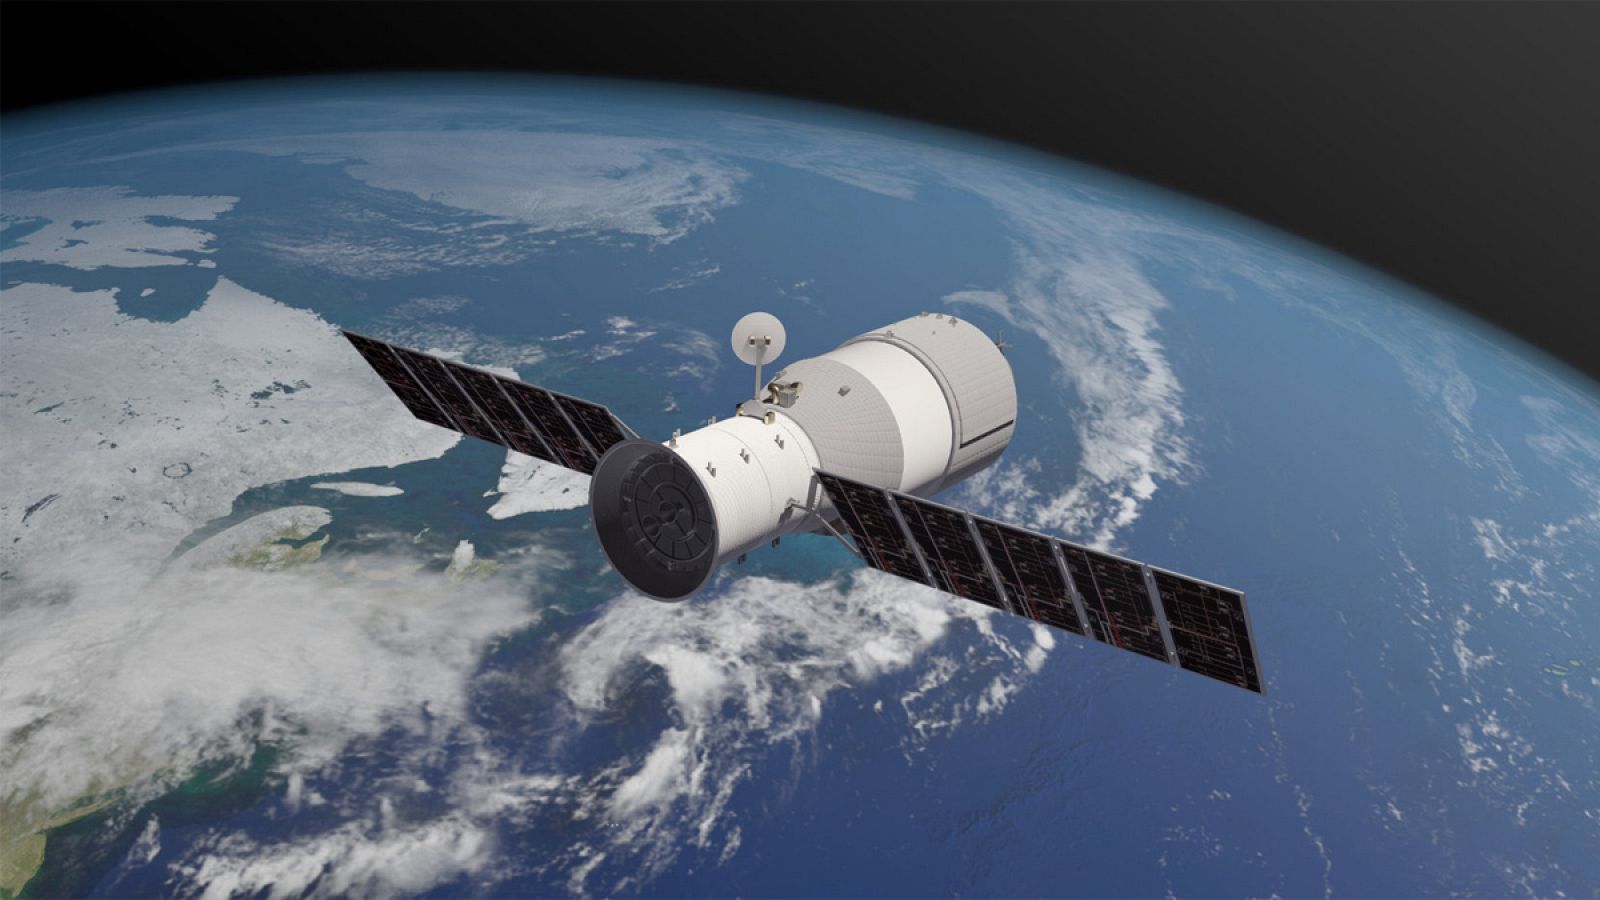 El laboratorio orbital Tiangong 1 está en desuso desde 2016 y vaga sin control alrededor de la Tierra.